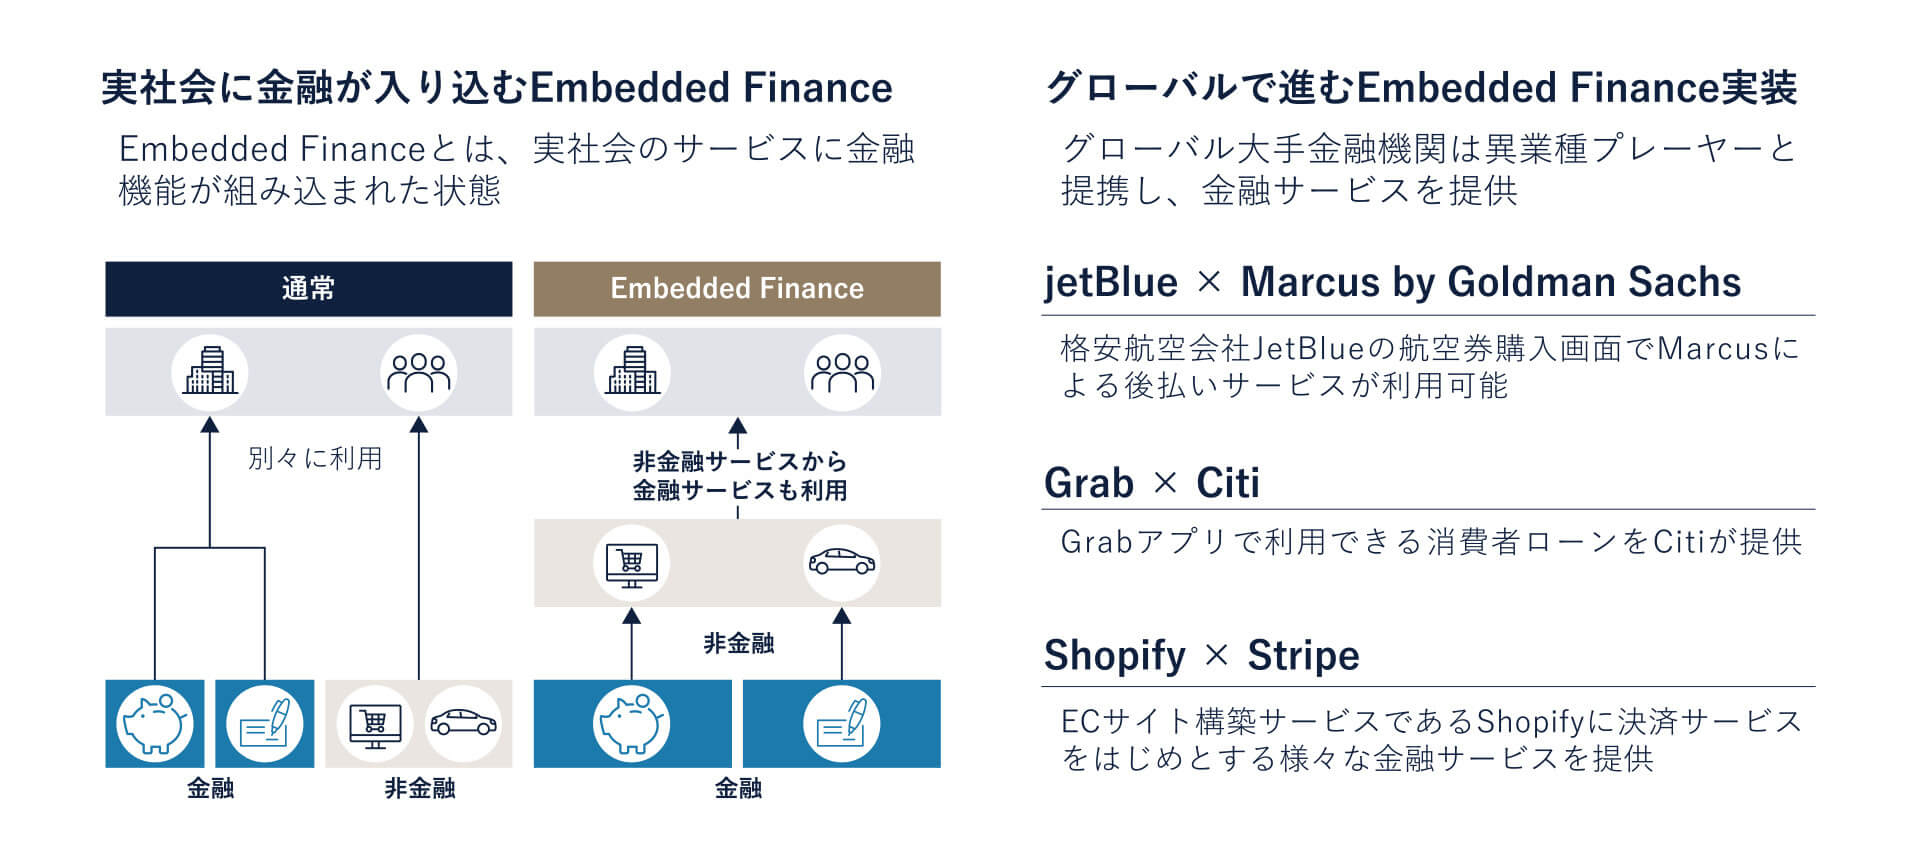 【図1】Embedded Financeの事例